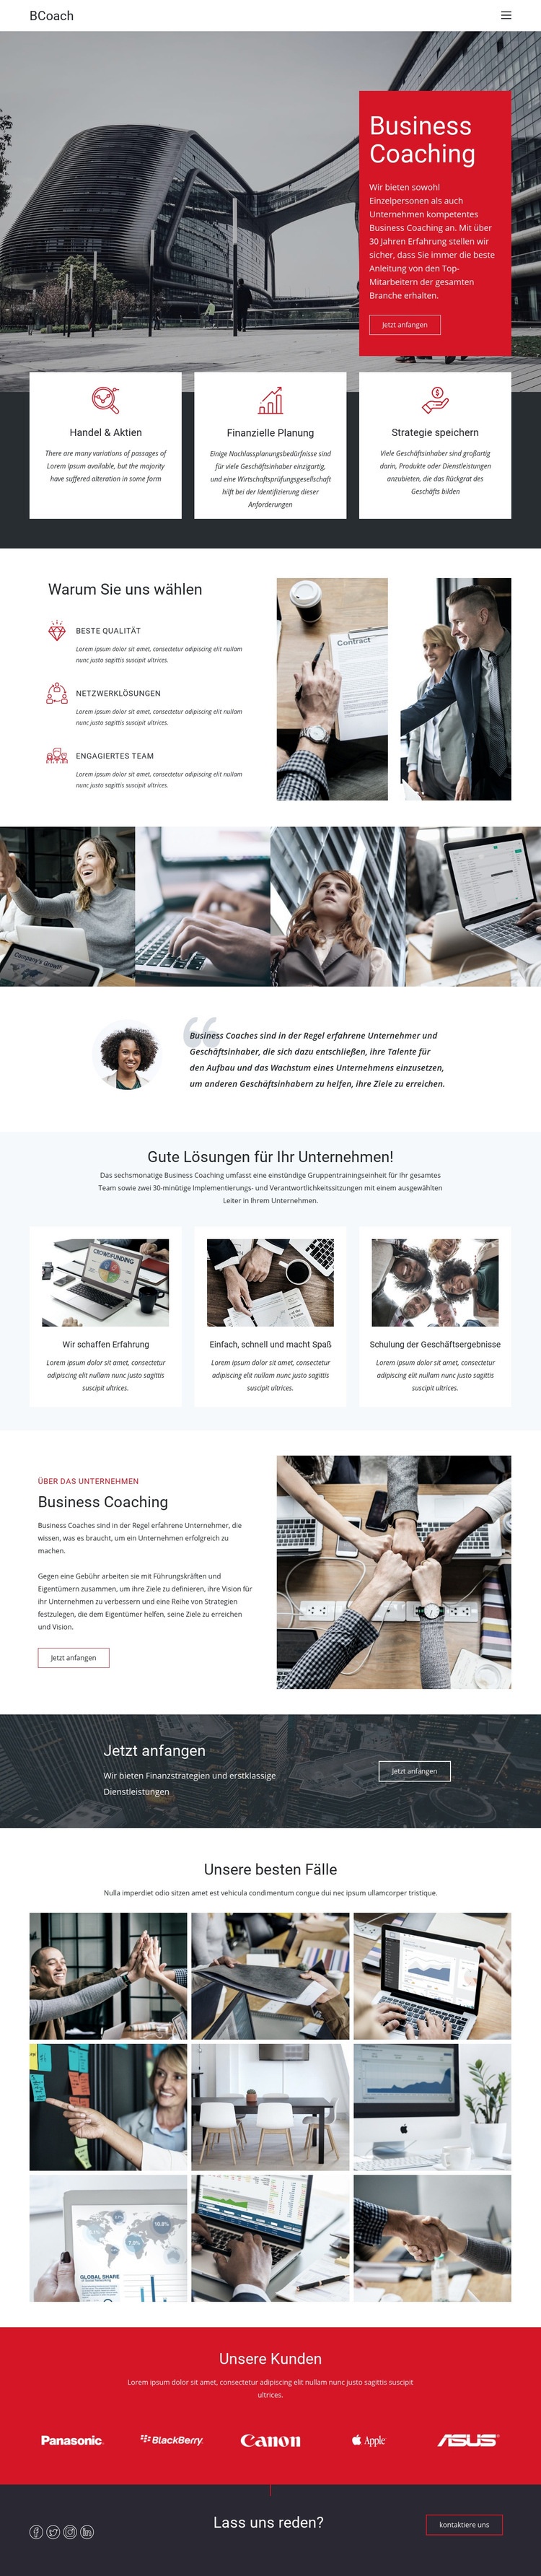 Coaching von Führungskräften Website-Modell